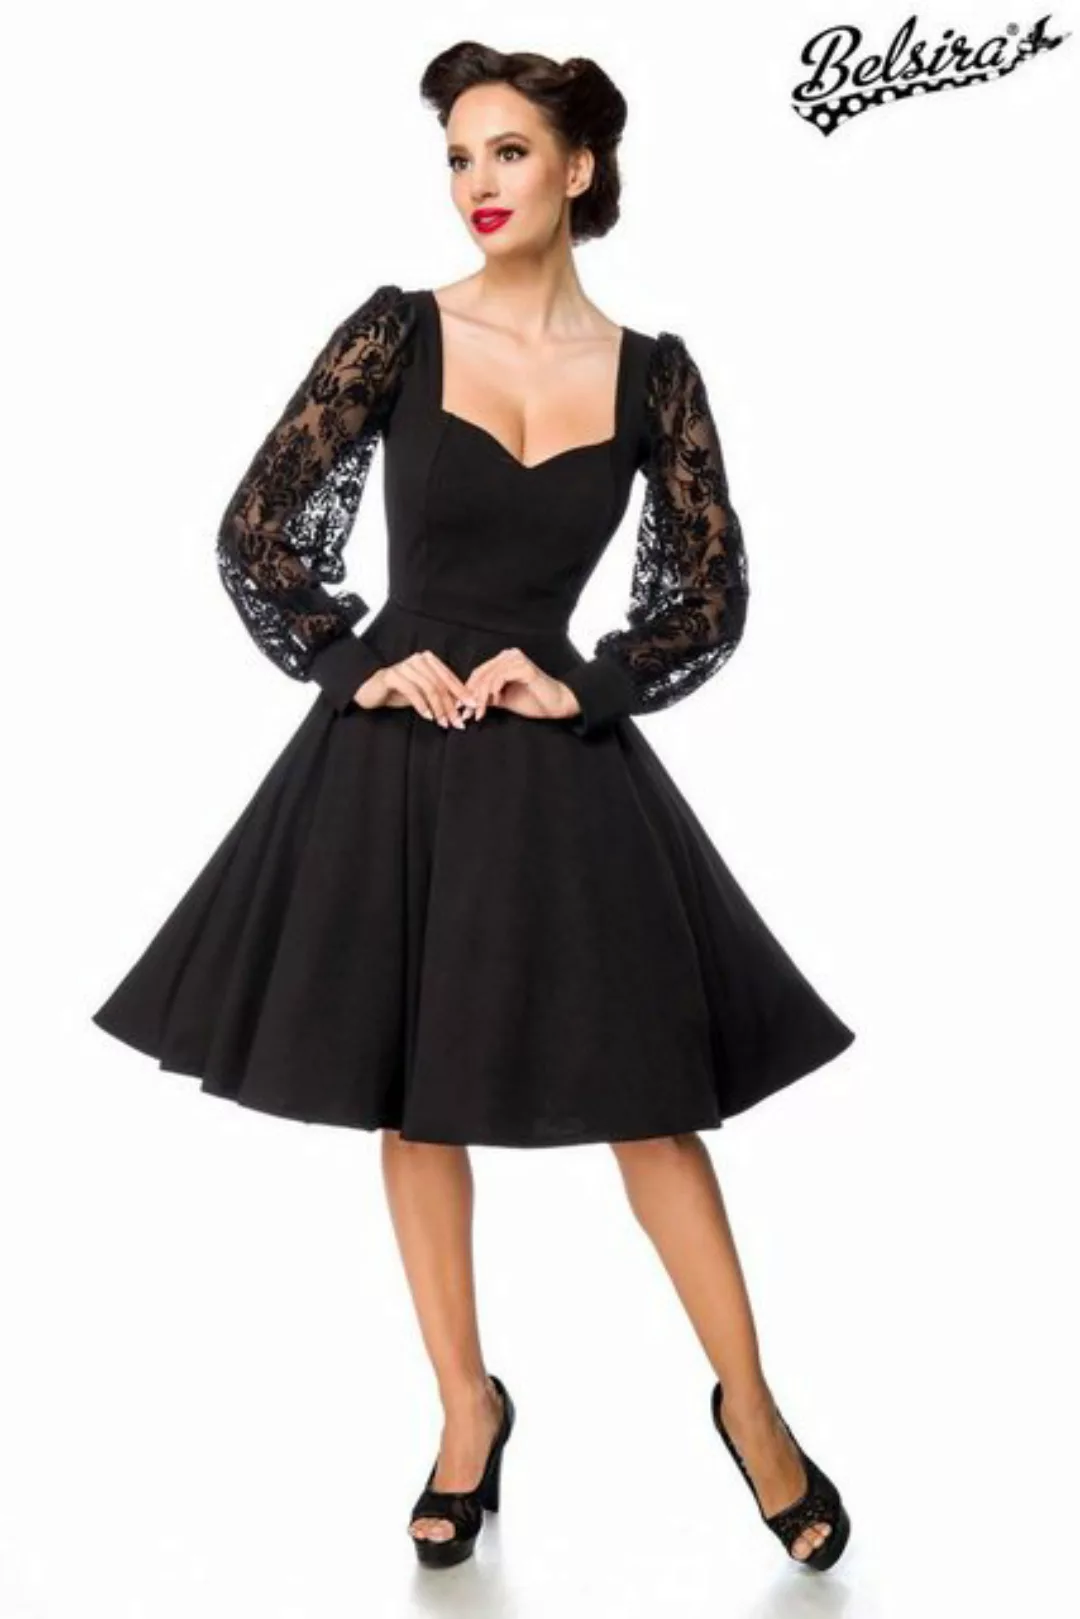 BELSIRA Trachtenkleid Belsira - elegantes Kleid mit Spitzenärmel - S - günstig online kaufen